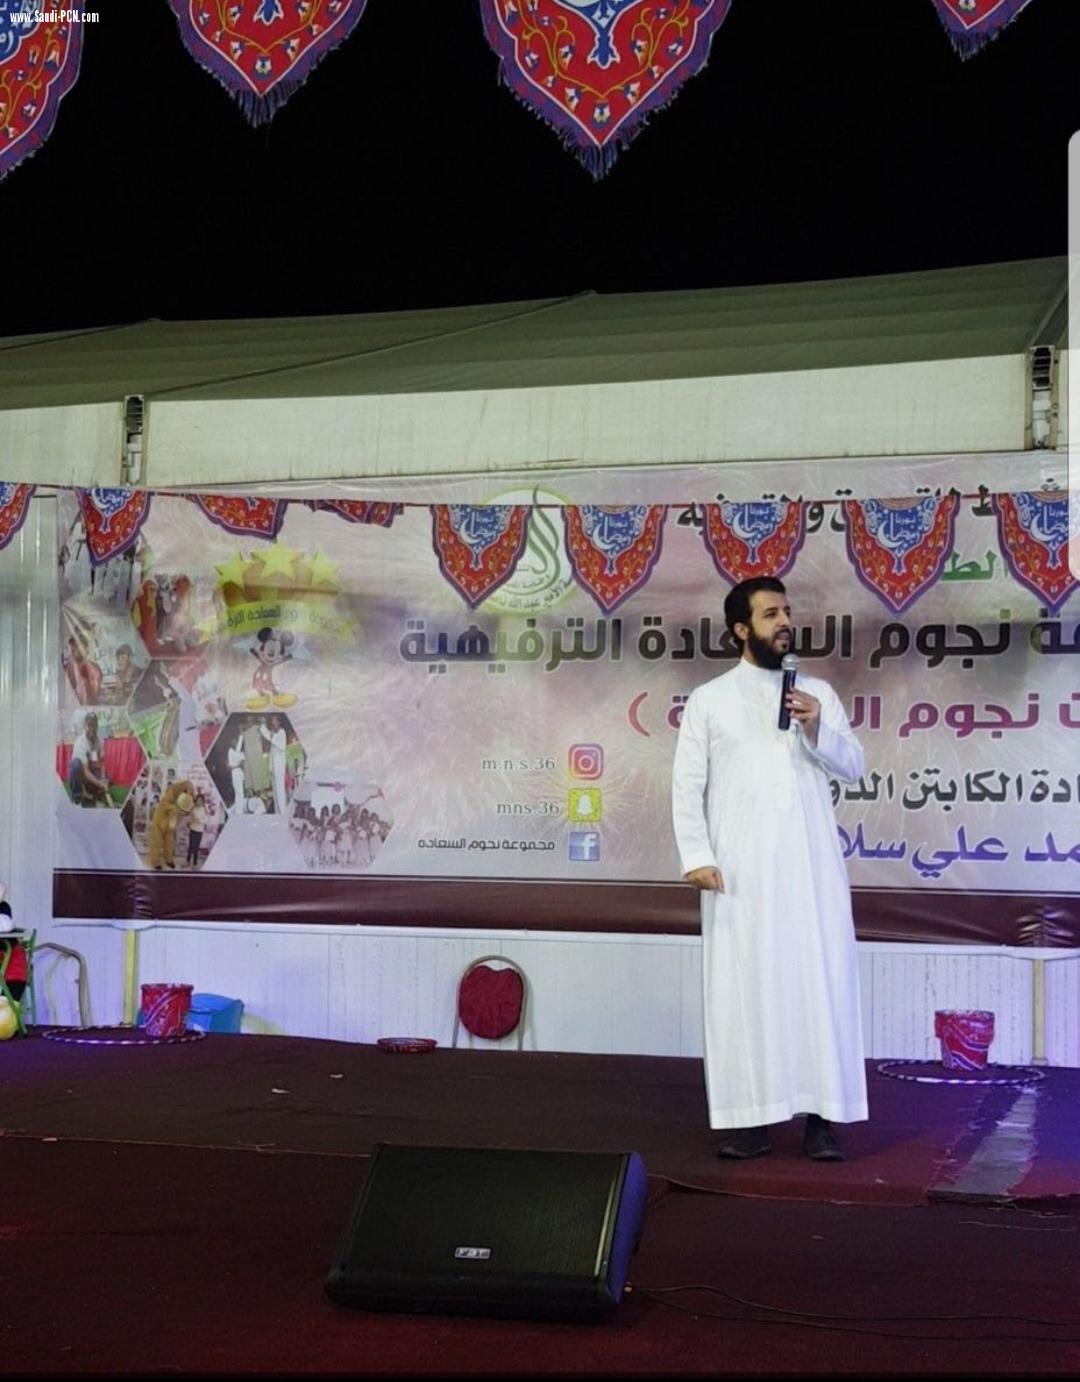 المستشارالأسري أبو راشد يوجه عدة نصائح للأزواج خلال مشاركته في مهرجان خميس مشيط للتسوق